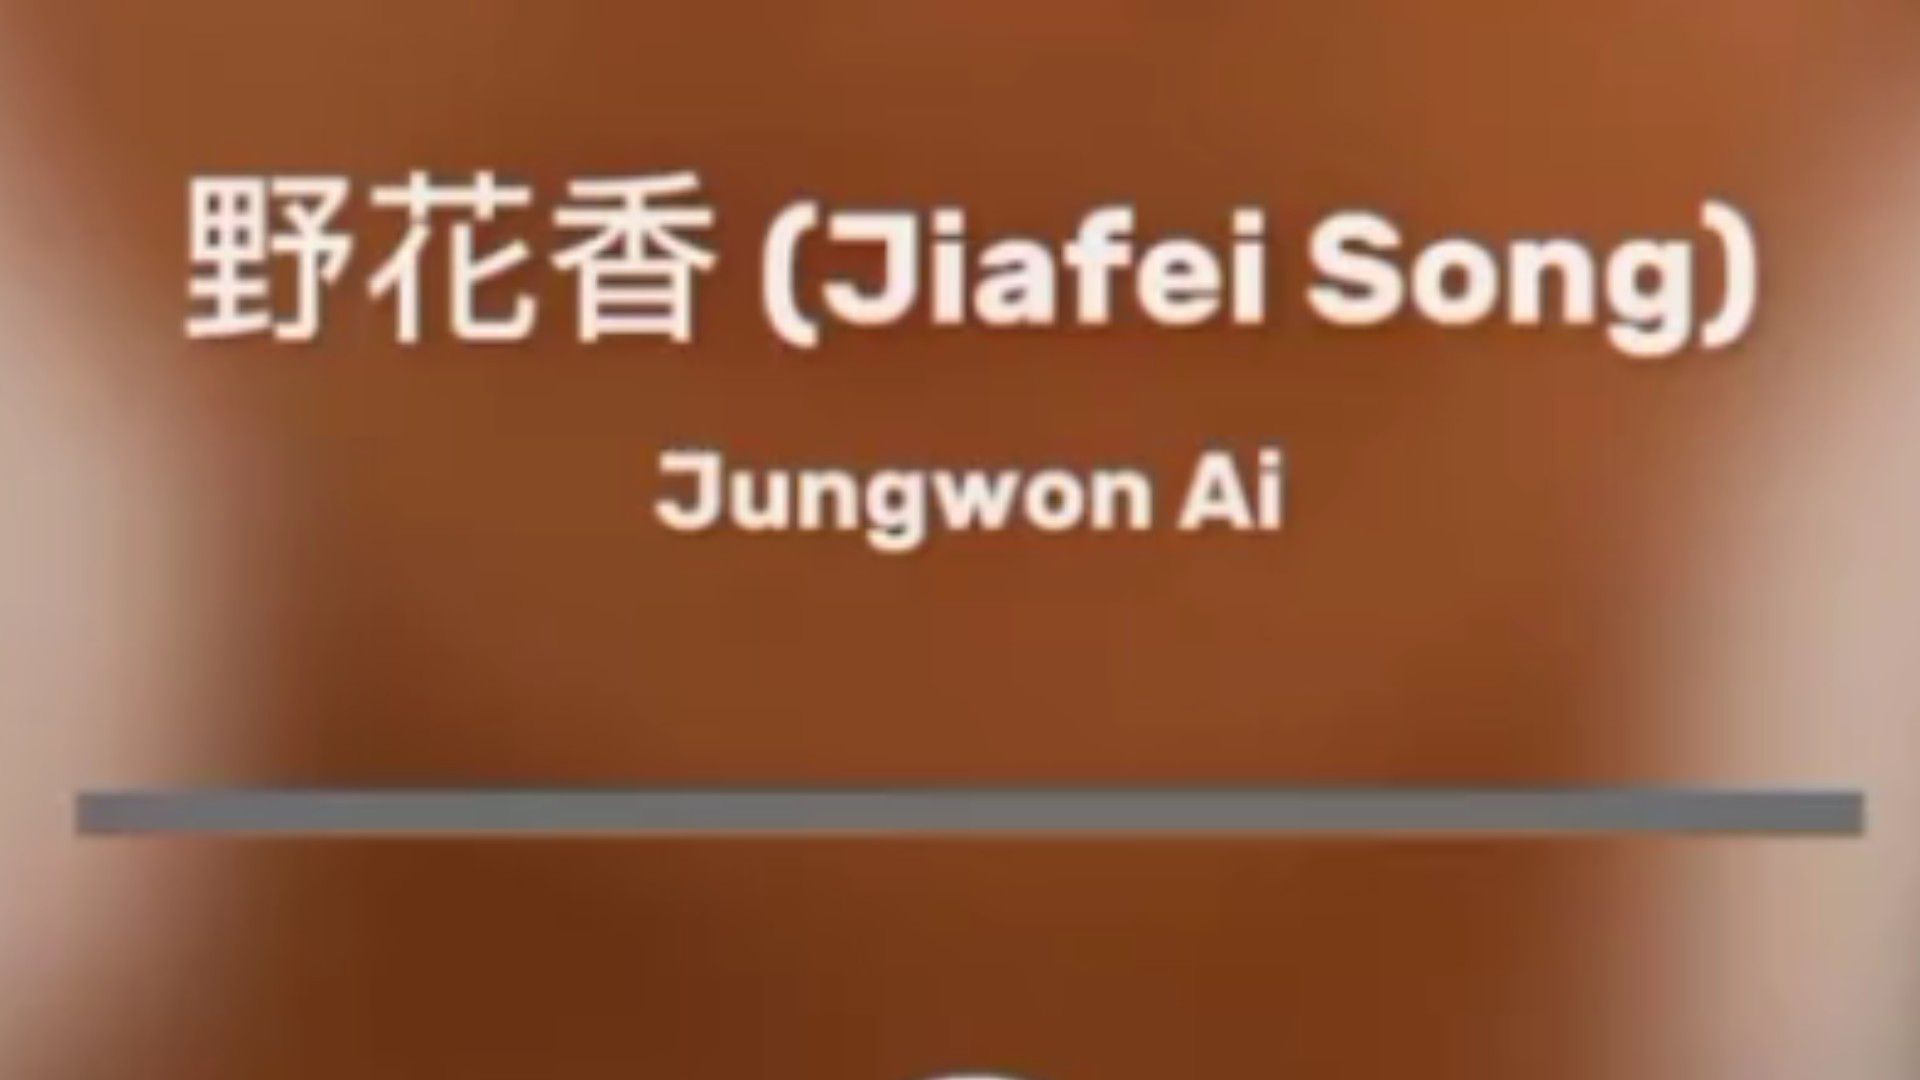 Jiafei - The First Single — Jiafei